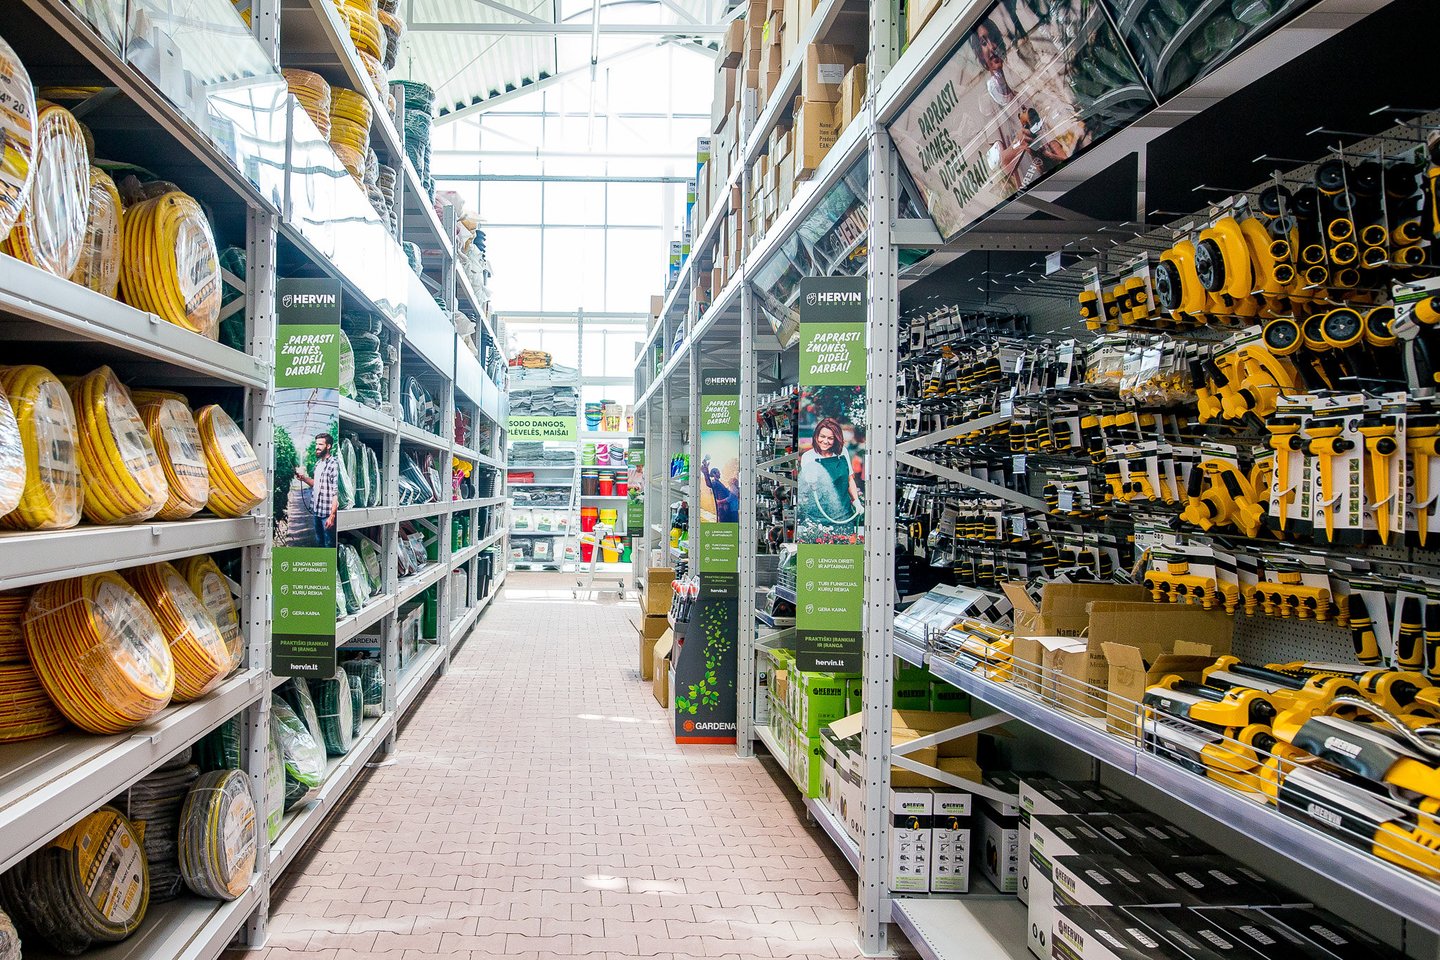  Ketvirtadienio rytą Mažeikiuose duris atvers nauja lietuviško prekybos tinklo „Moki-veži“ parduotuvė.